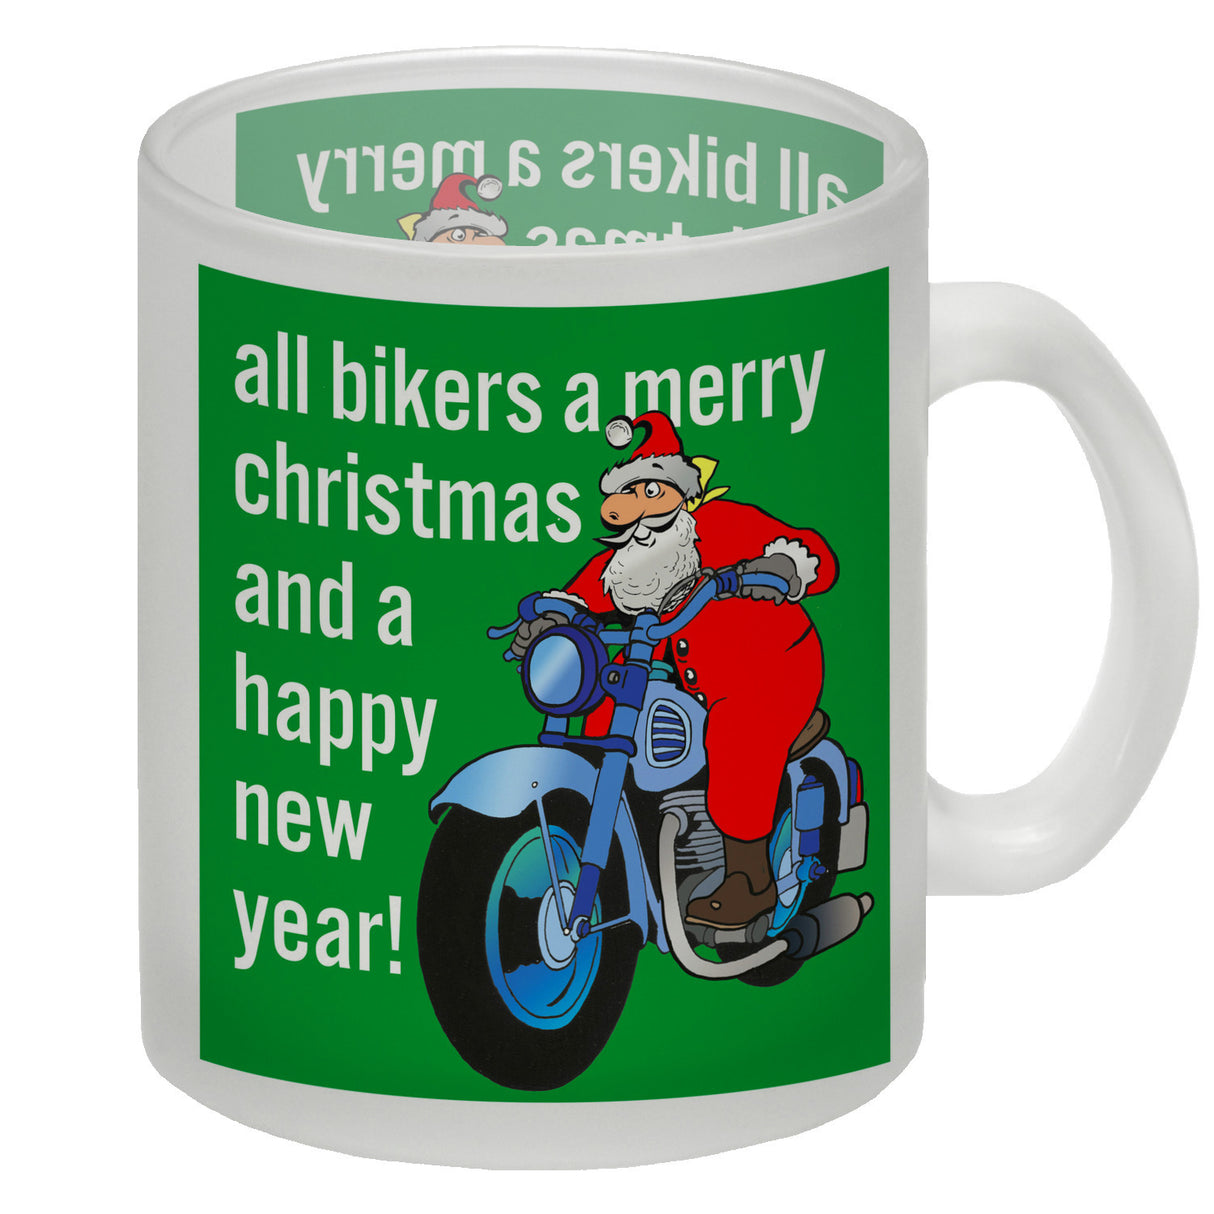 Weihnachten Biker Kaffeebecher mit Weihnachtsmann auf Motorrad